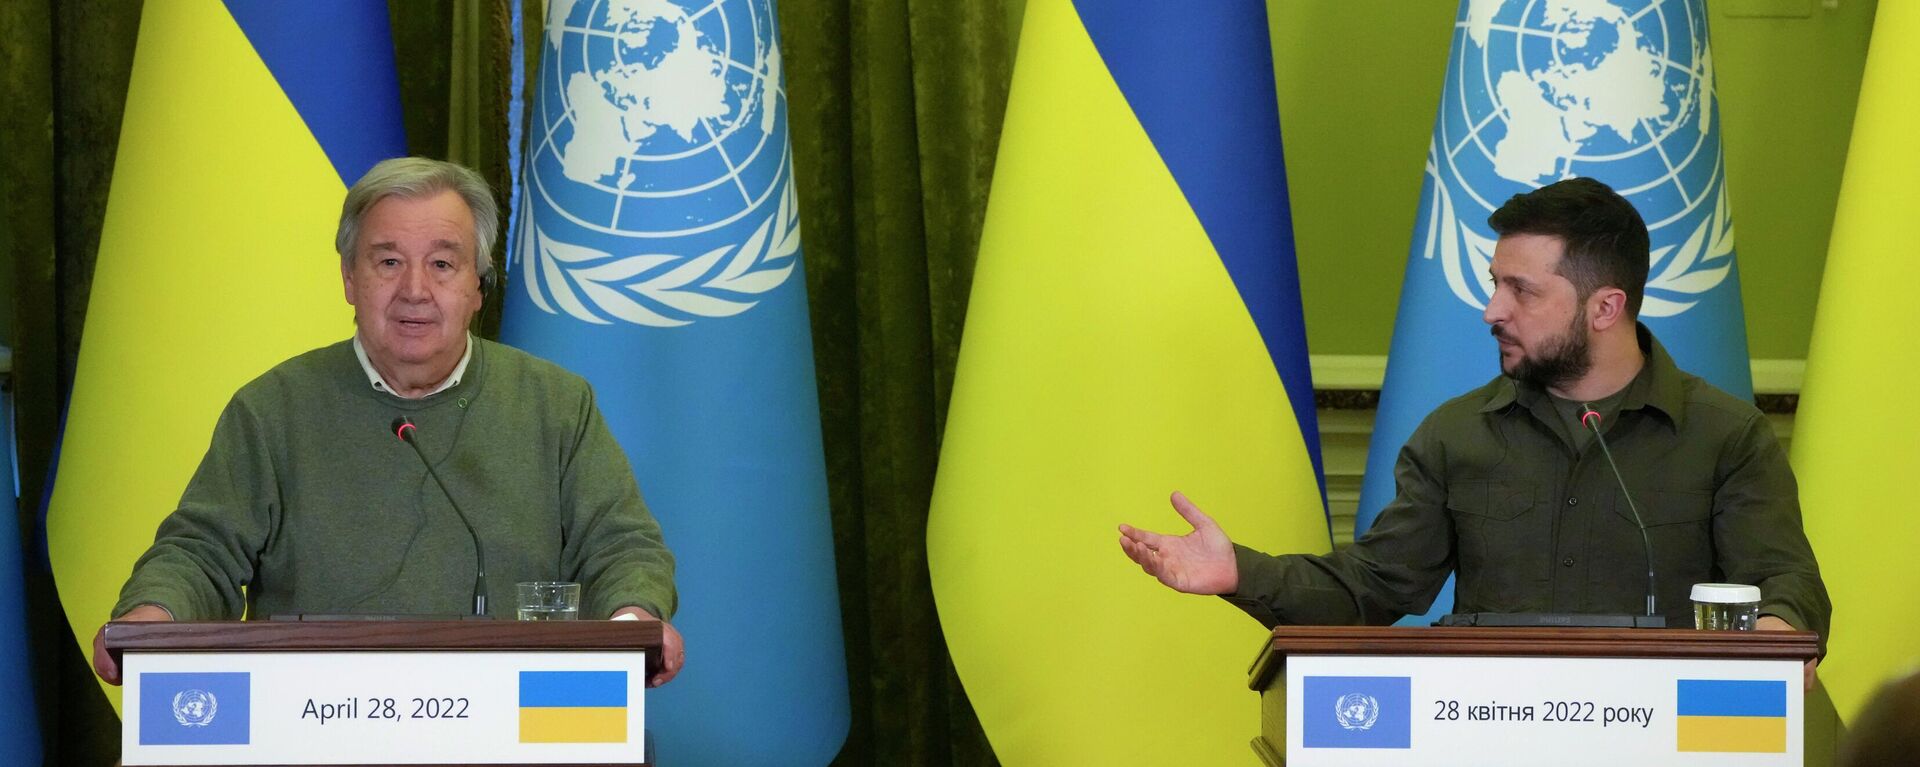 O secretário-geral da ONU, António Guterres (à esquerda), participa de encontro com o presidente ucraniano, Vladimir Zelensky, em Kiev, Ucrânia, 28 de abril de 2022. - Sputnik Brasil, 1920, 28.04.2022